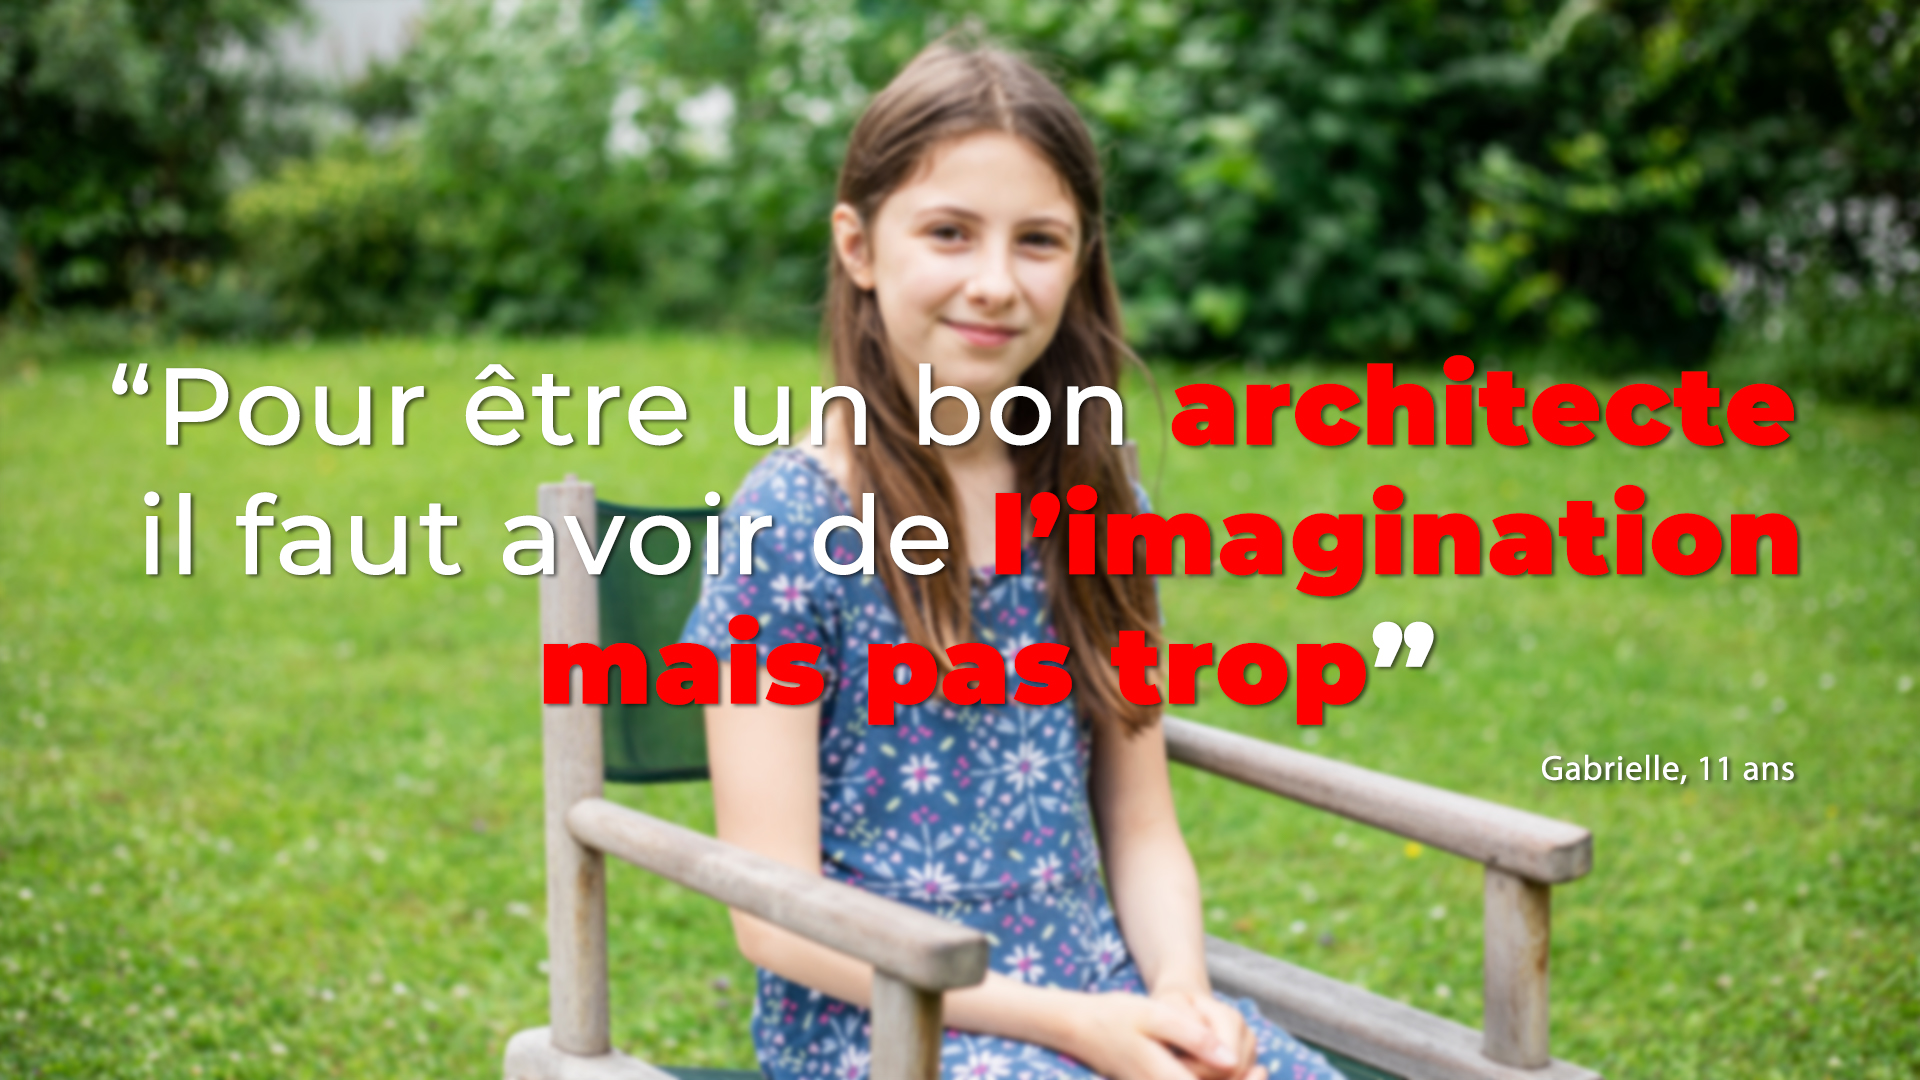 Interview Gabrielle et Pimprenelle, 11 ans : le métier d'architecte